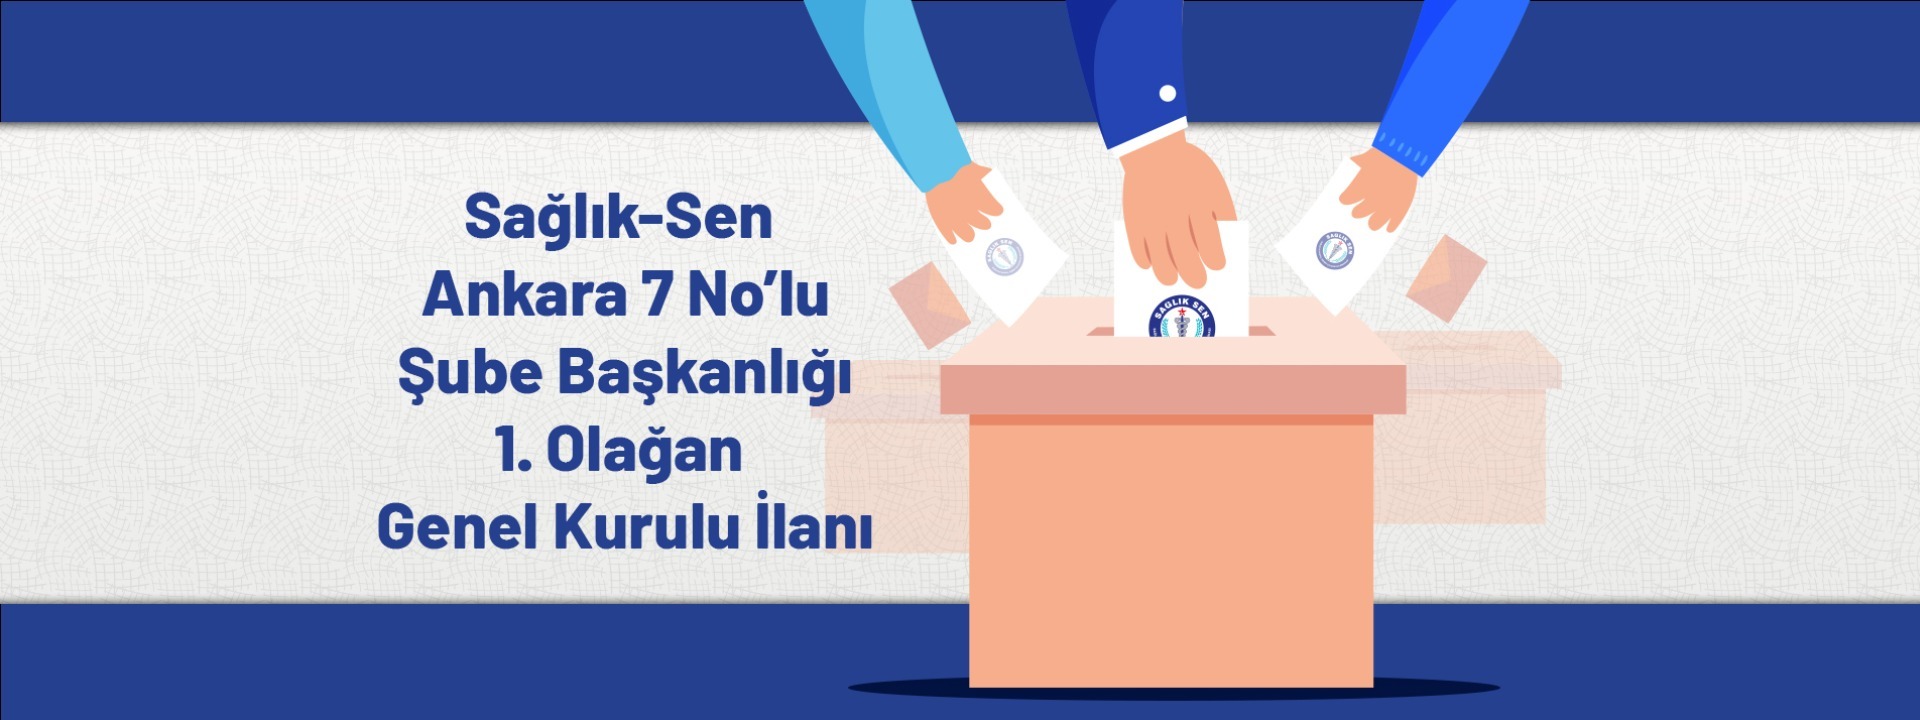 Sağlık-Sen Ankara 7 No'lu Şube Başkanlığı 1. Olağan Genel Kurul İlanı